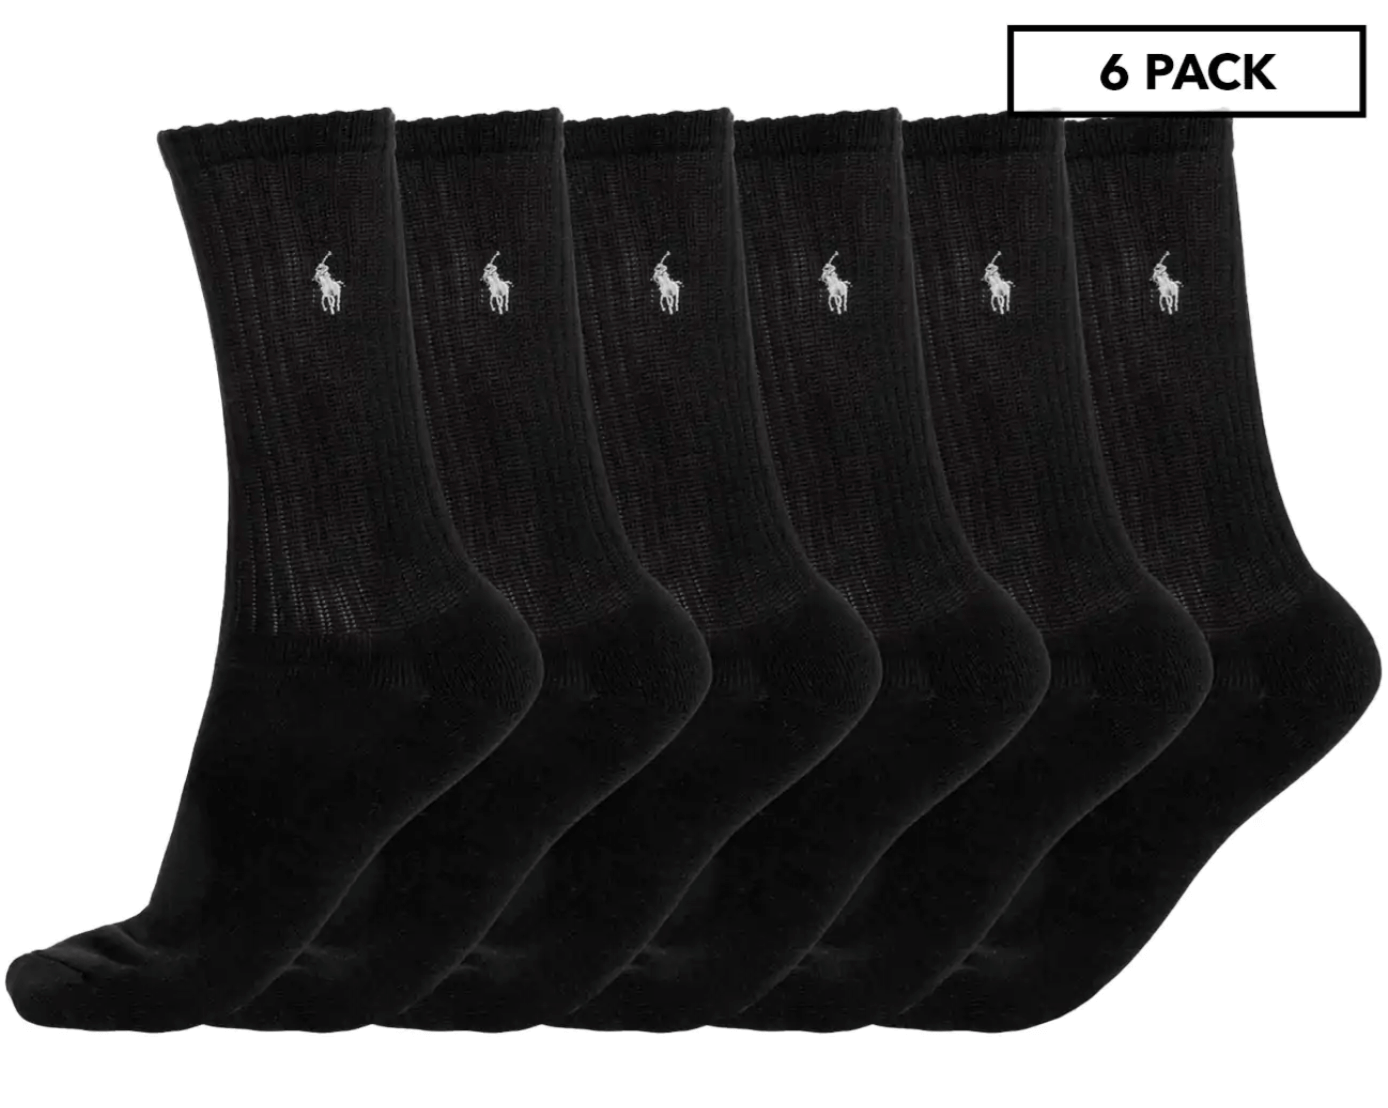 Polo Ralph Lauren Men's Size US 10-13 Rib Crew Socks 6-Pack - Black